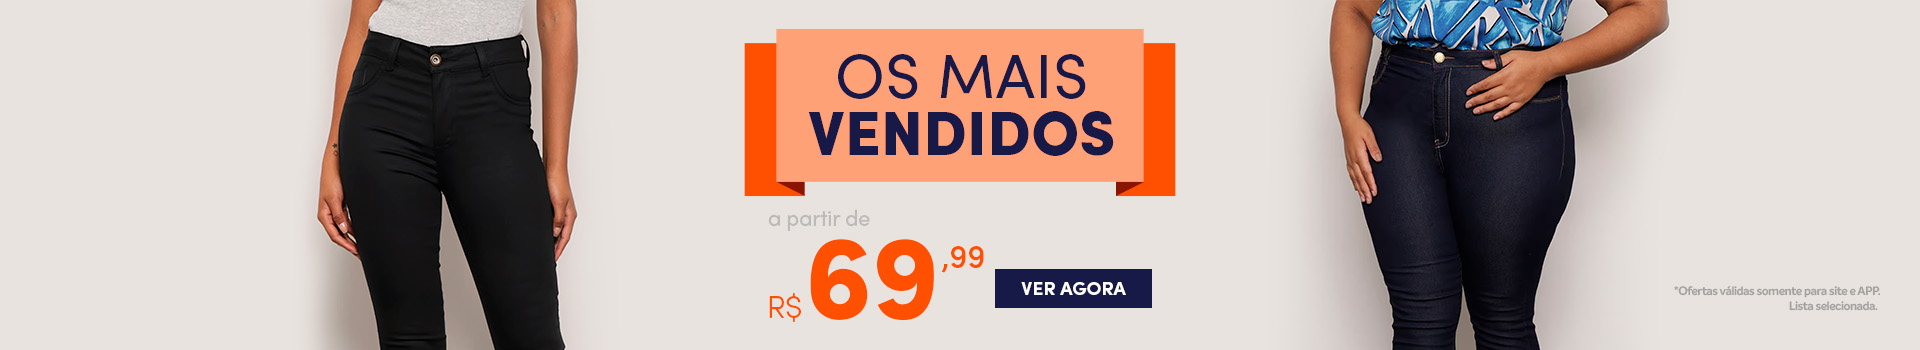 Jeans e Sarja Femininos mais vendidos a partir de R$69,99